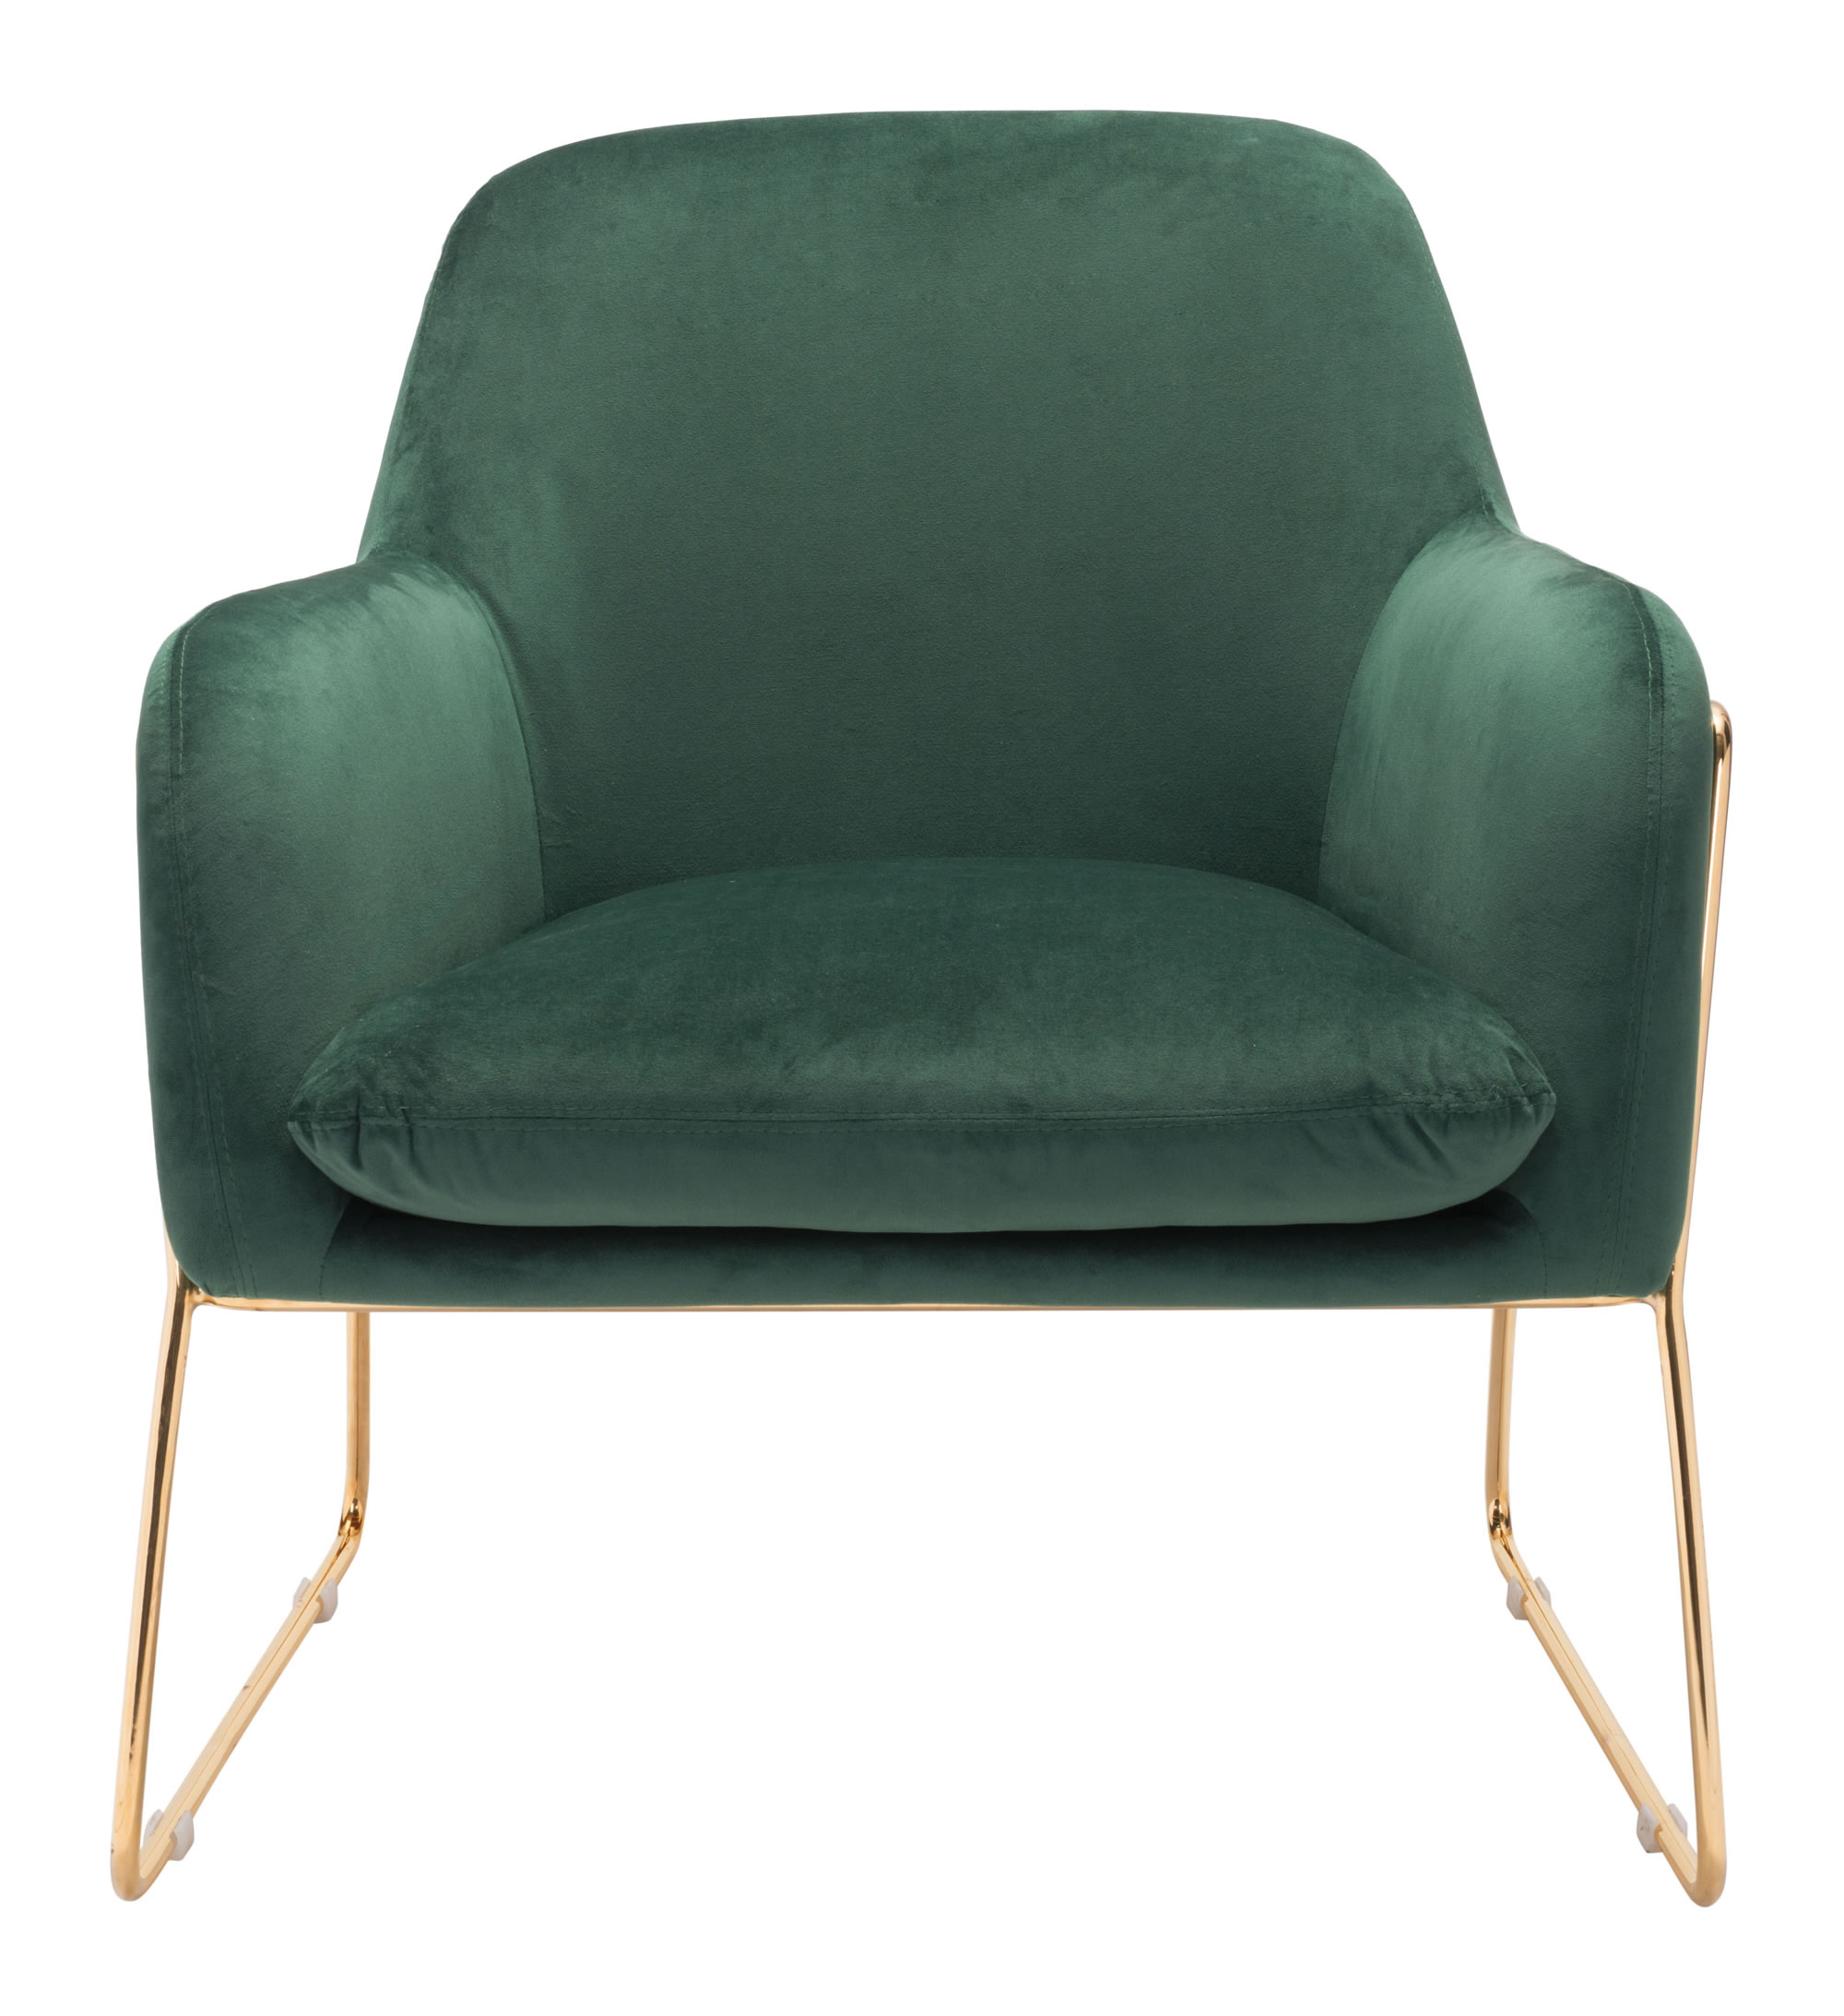 29.9" x 30.3" x 31.7" Green Velvet Chromed Steel Arm Chair